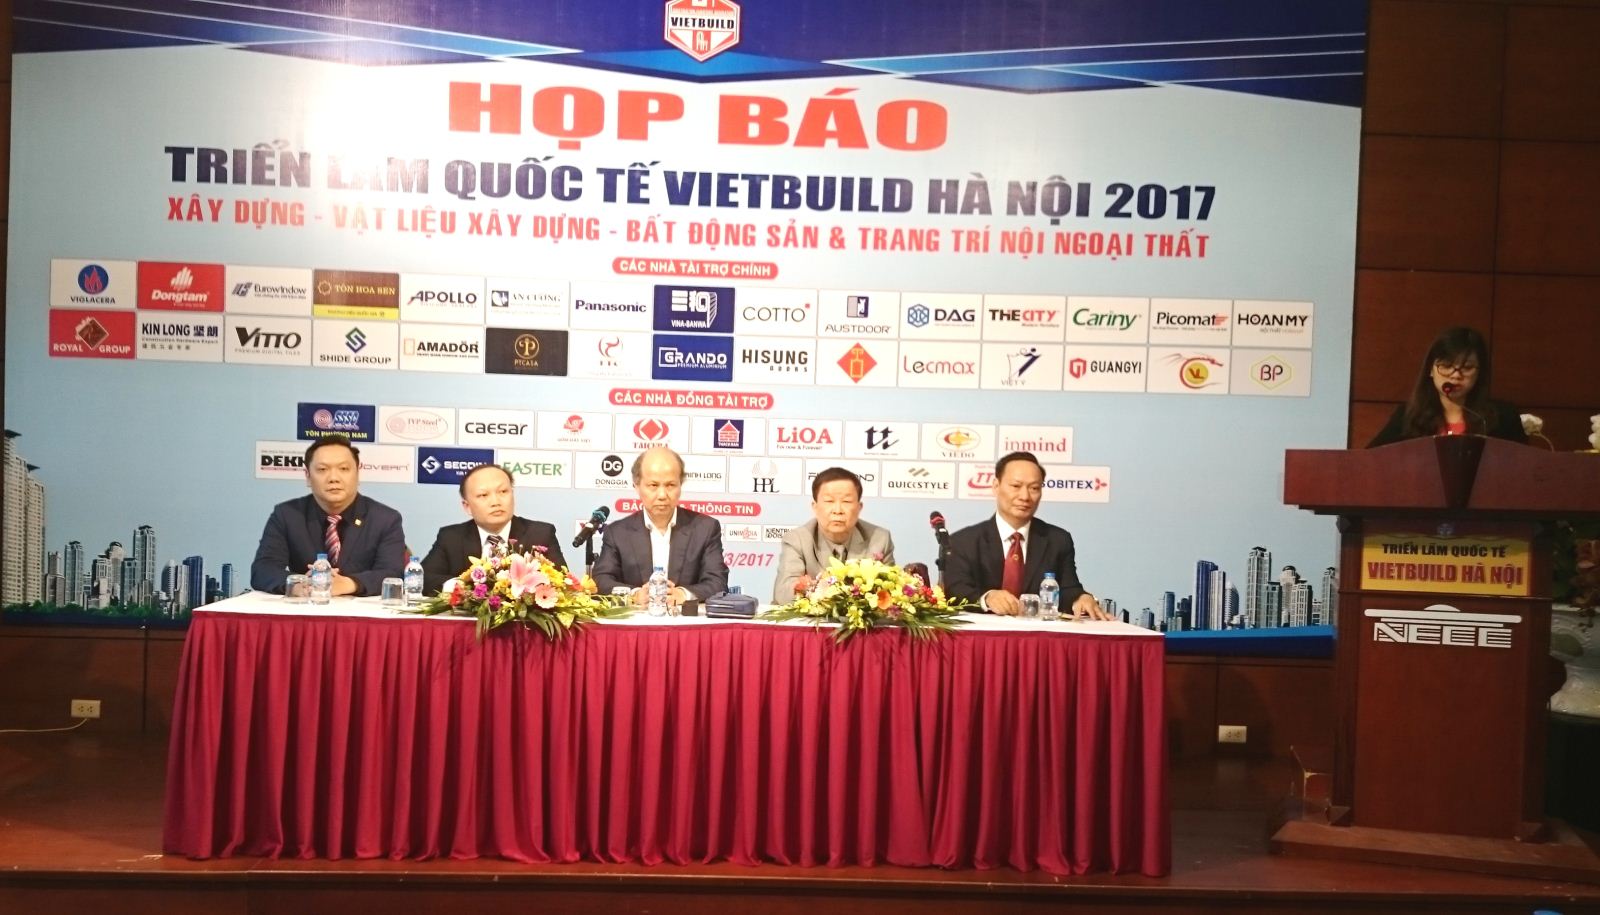 Triển lãm Vietbuild Hà Nội 2017 – Nơi trình diễn các sản phẩm mới, công nghệ mới của các doanh nghiệp hàng đầu